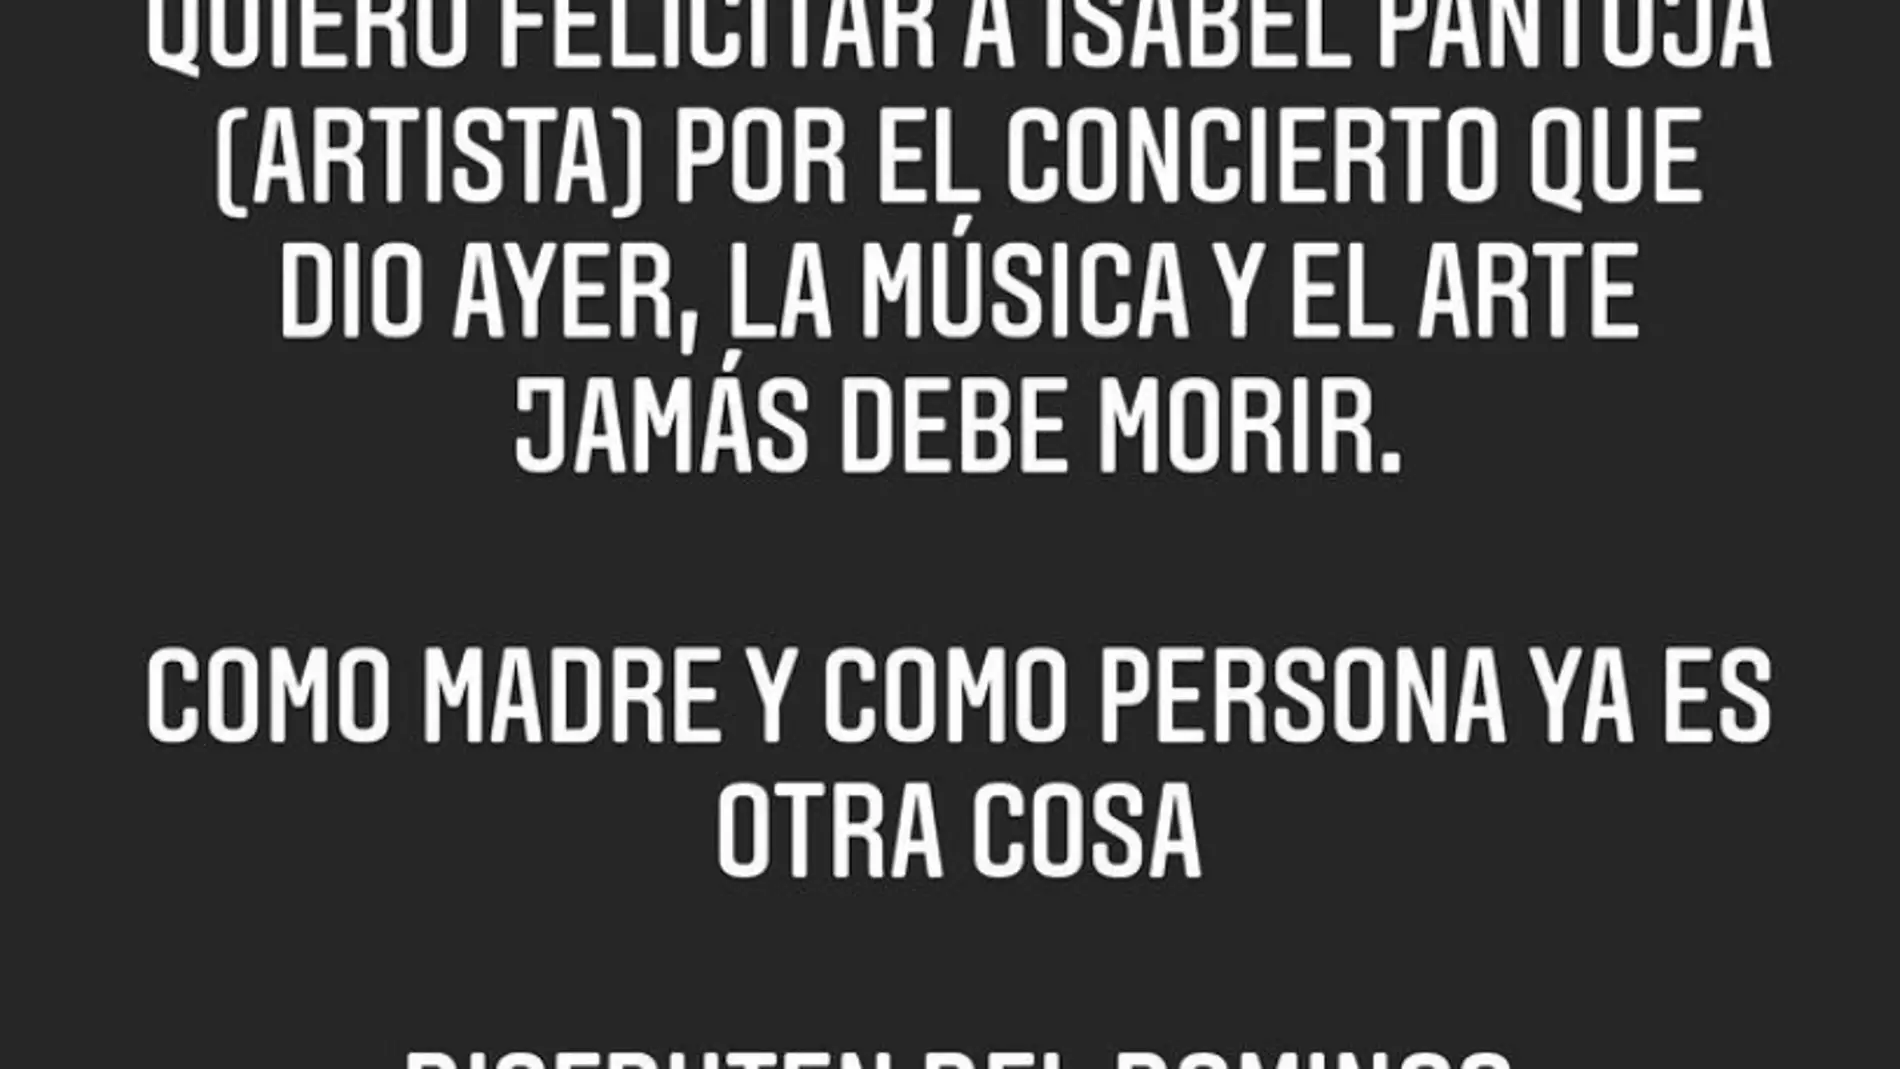 Kiko Rivera felicita a su madre por su último concierto... con zasca incluido. title=